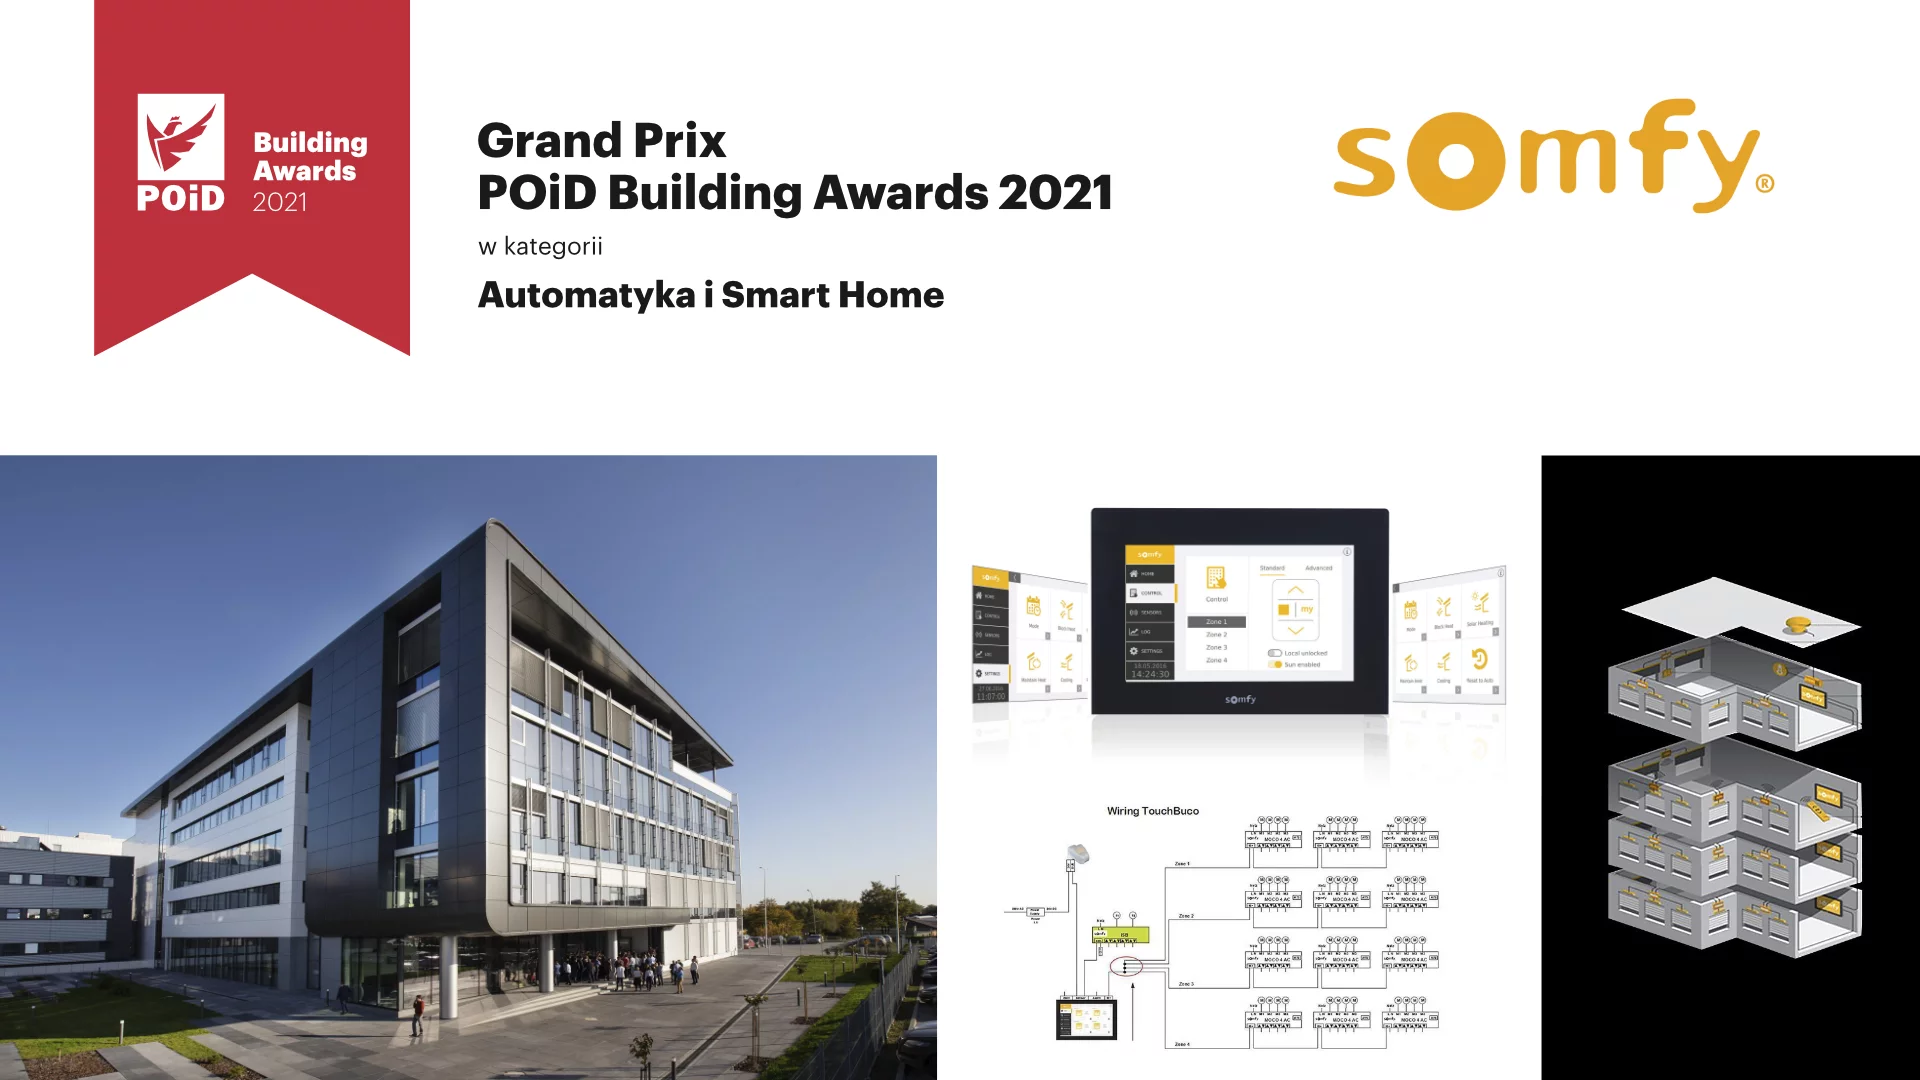 Nagrody w pierwszej edycji konkursu POiD Building Awards 2021 rozdane